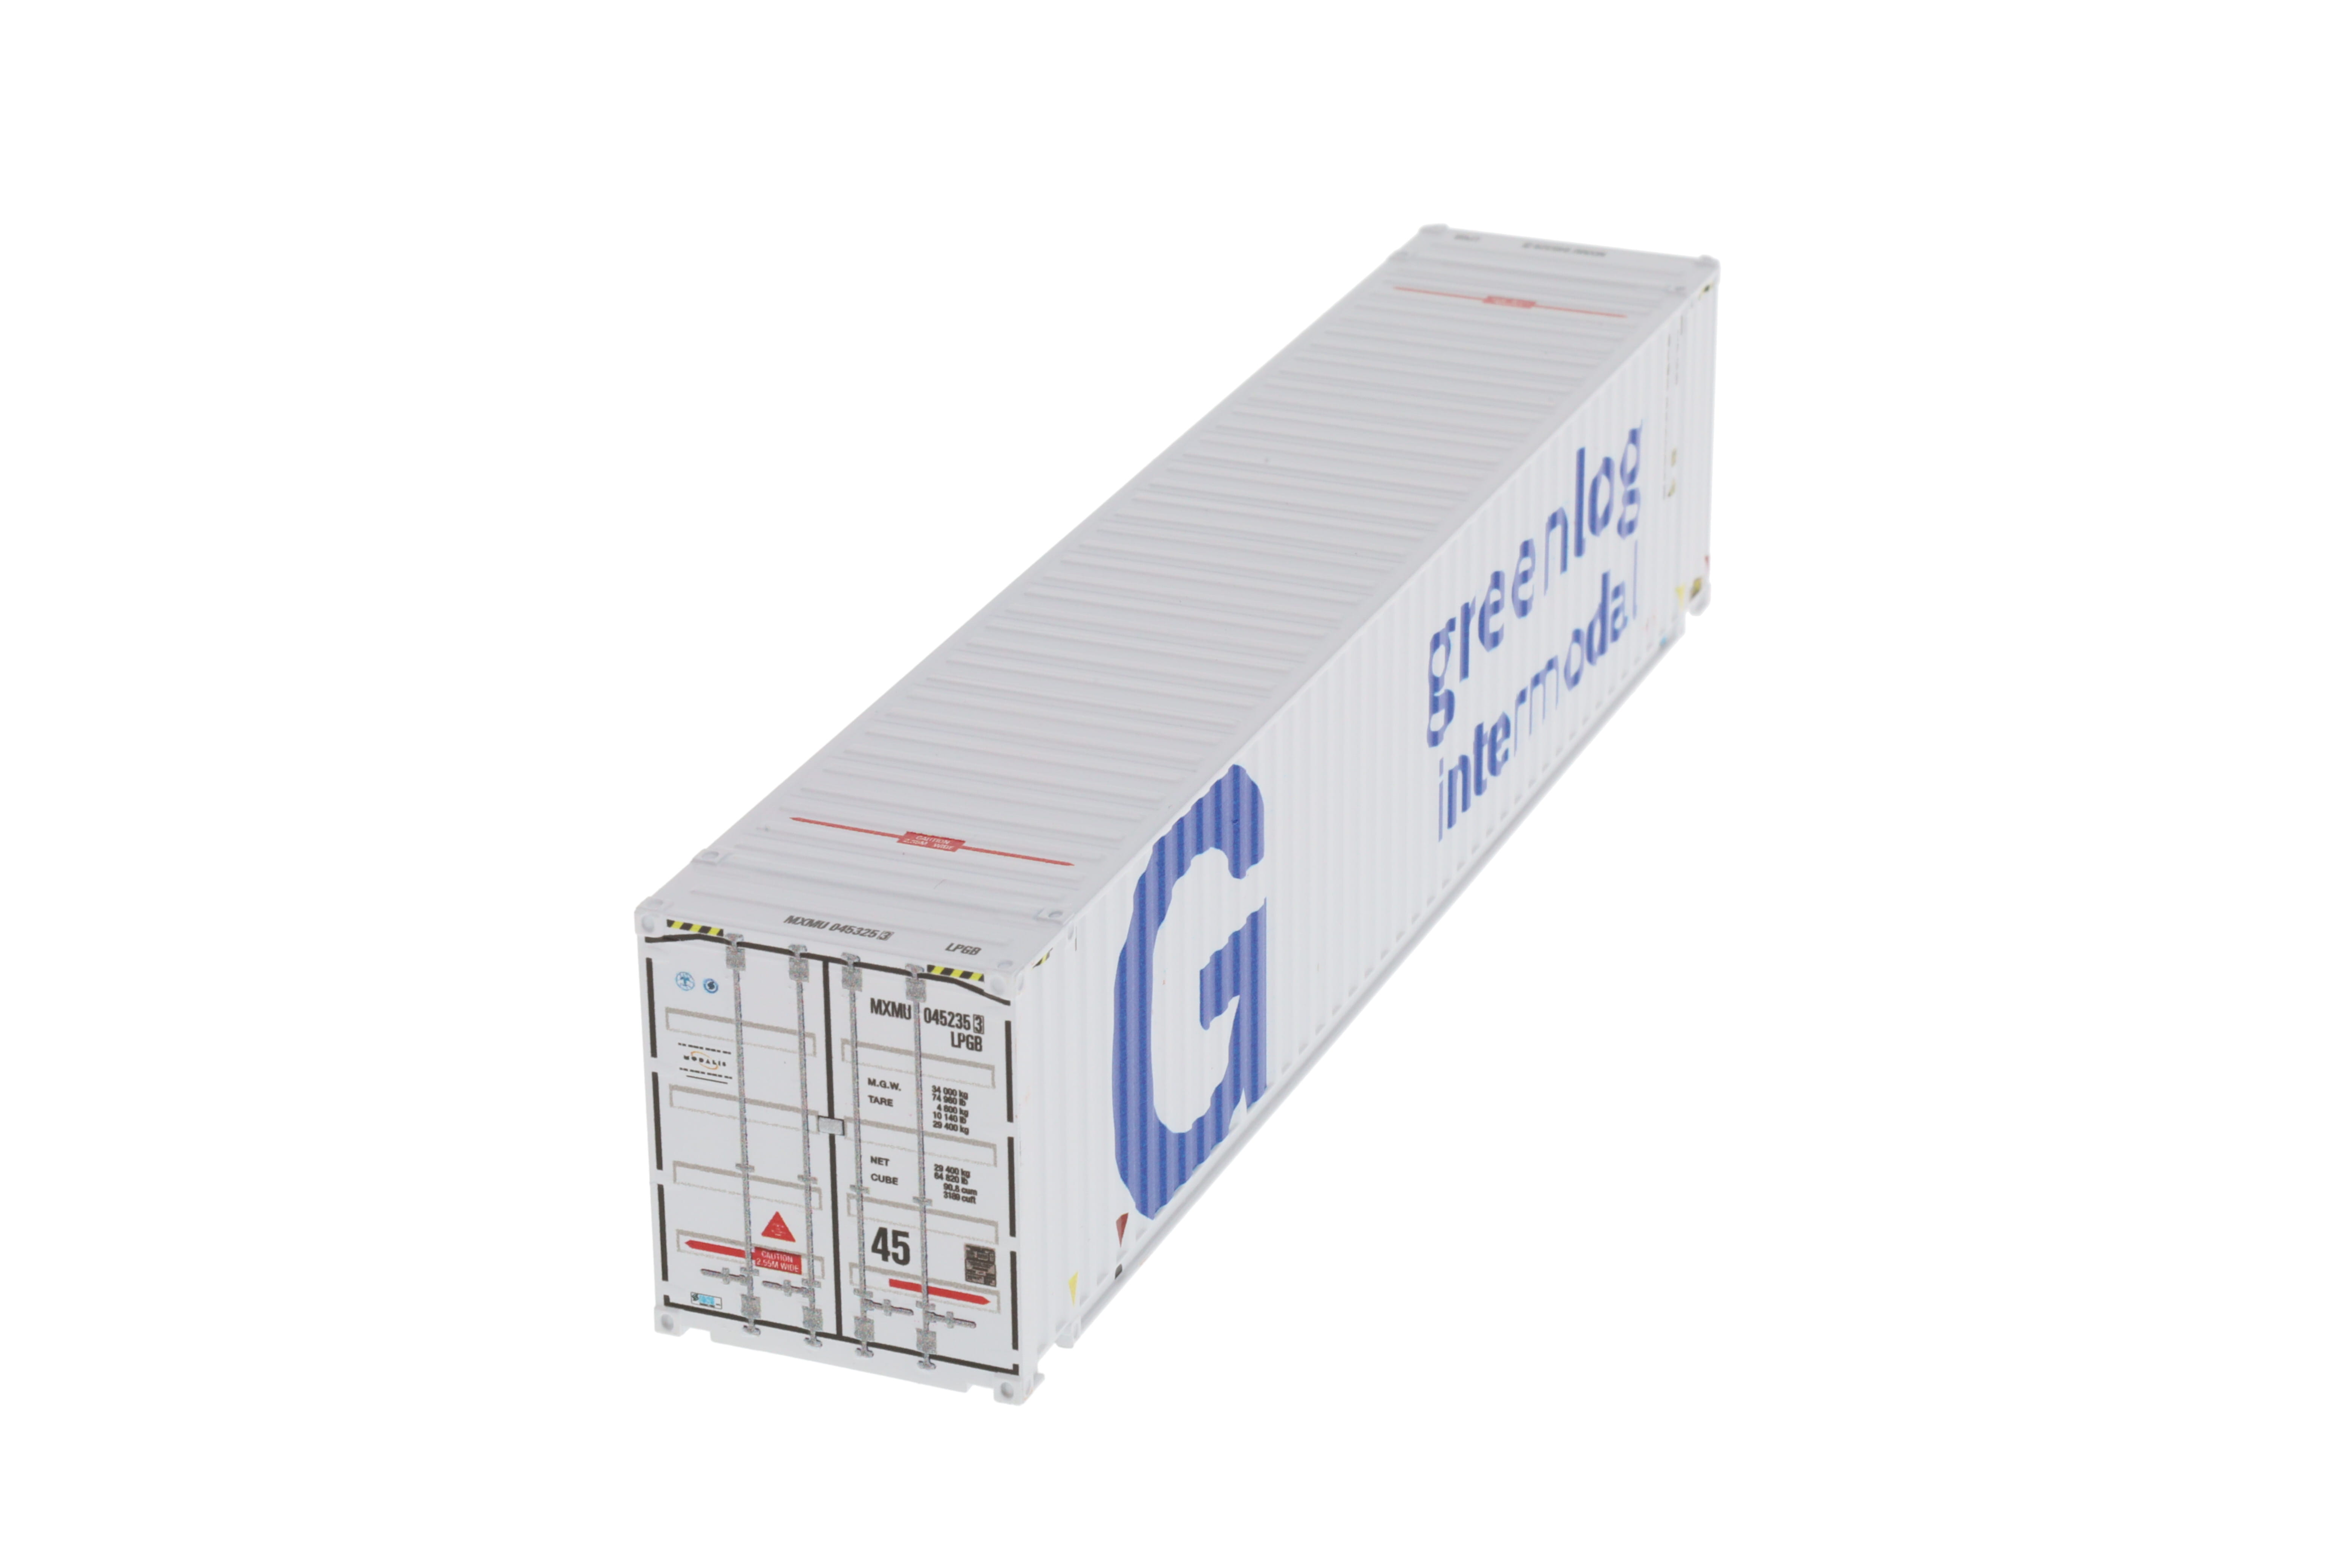 1:87 45´ Container GREENLOG INTERMODAL, WB-A HC (Euro), weiß, Modalis, MXMU 045235